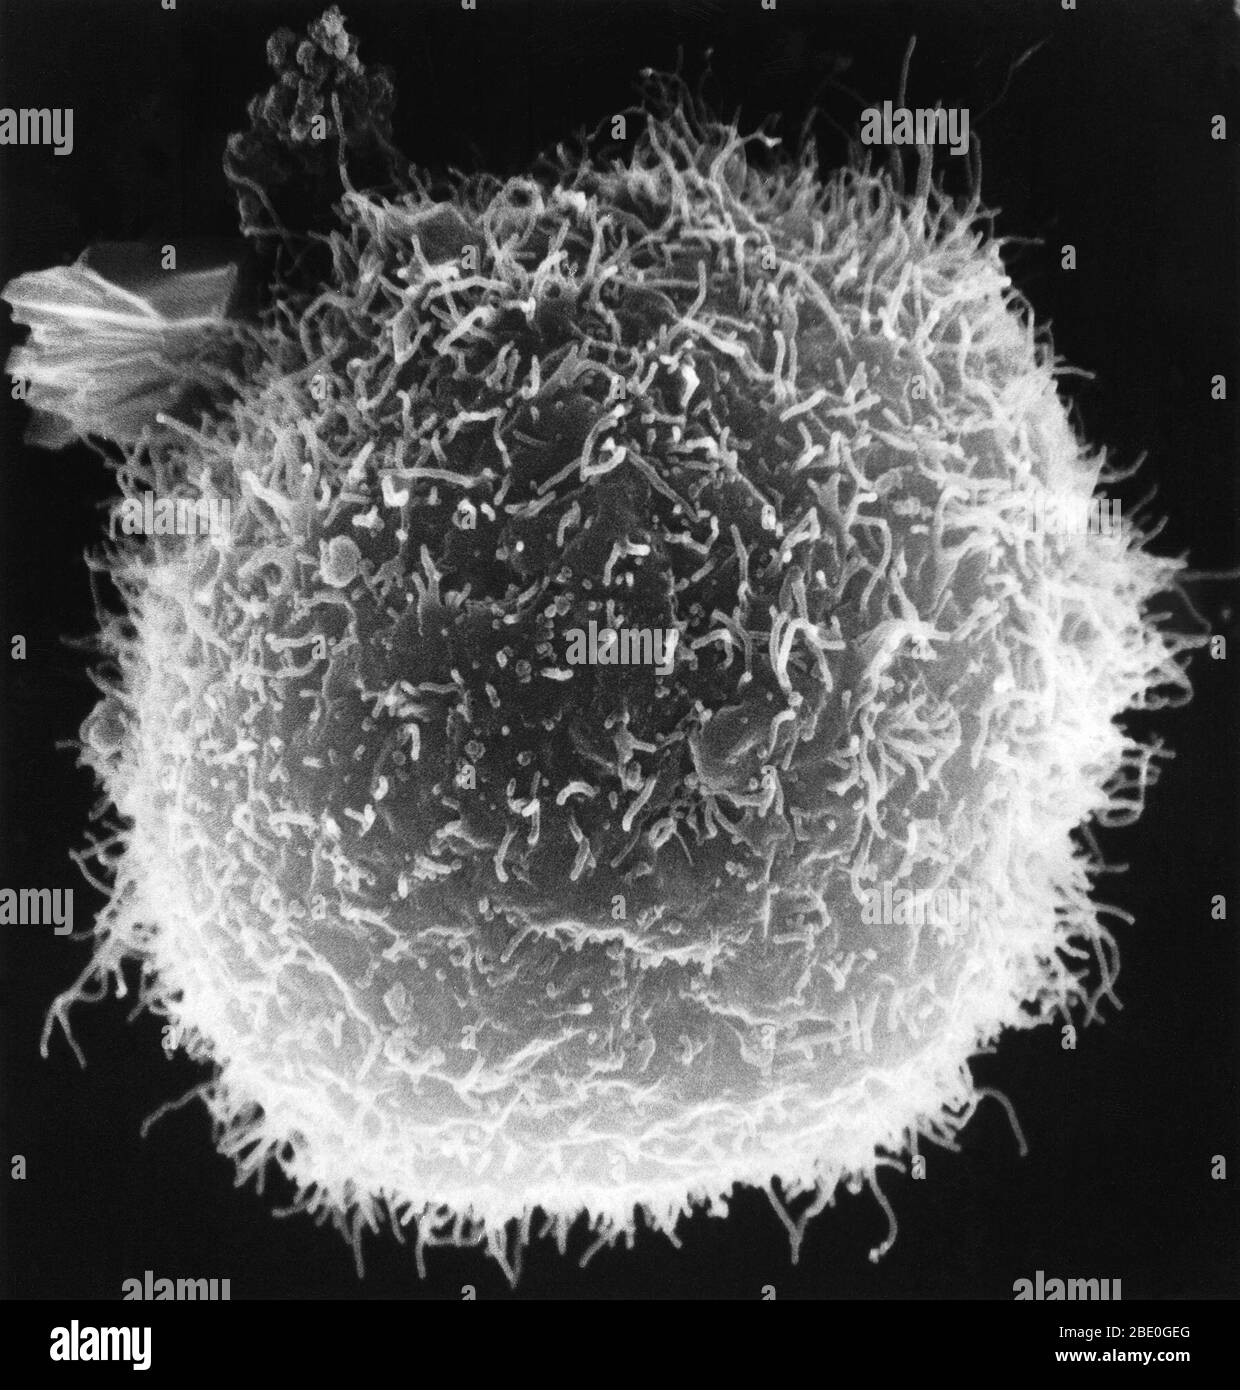 Les macrophages avec des surfaces projectiles interagissent avec un lymphocyte arrondi. Banque D'Images